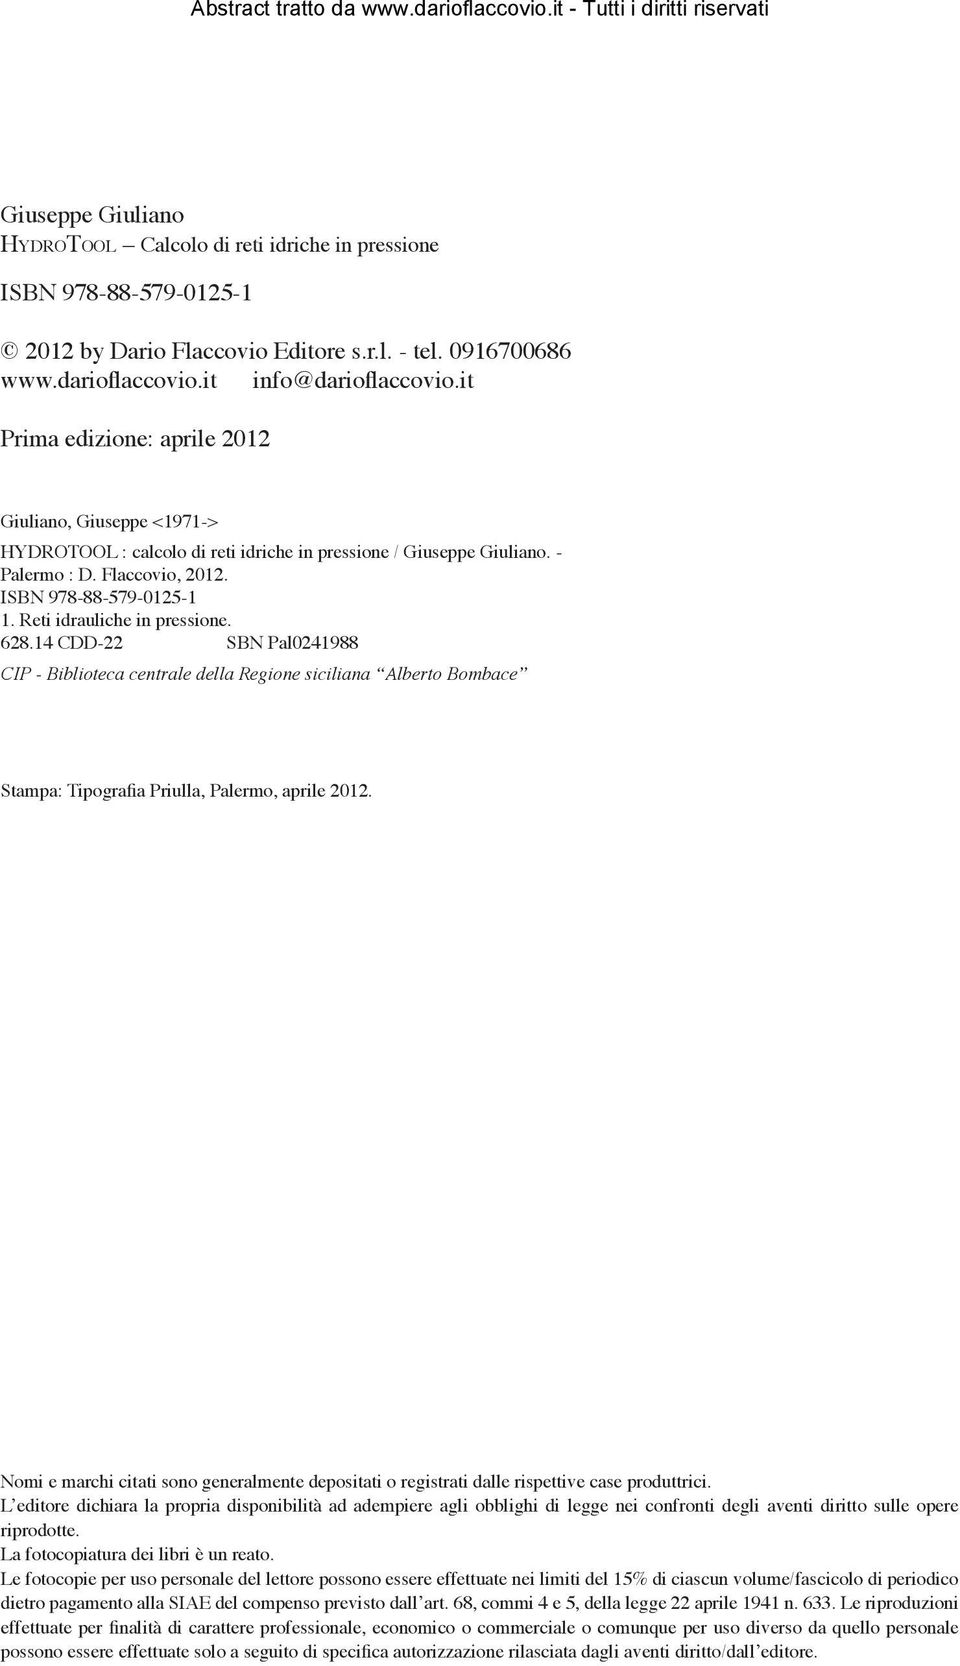 Reti idrauliche in pressione. 628.14 CDD-22 SBN Pal0241988 CIP - Biblioteca centrale della Regione siciliana Alberto Bombace Stampa: Tipografia Priulla, Palermo, aprile 2012.